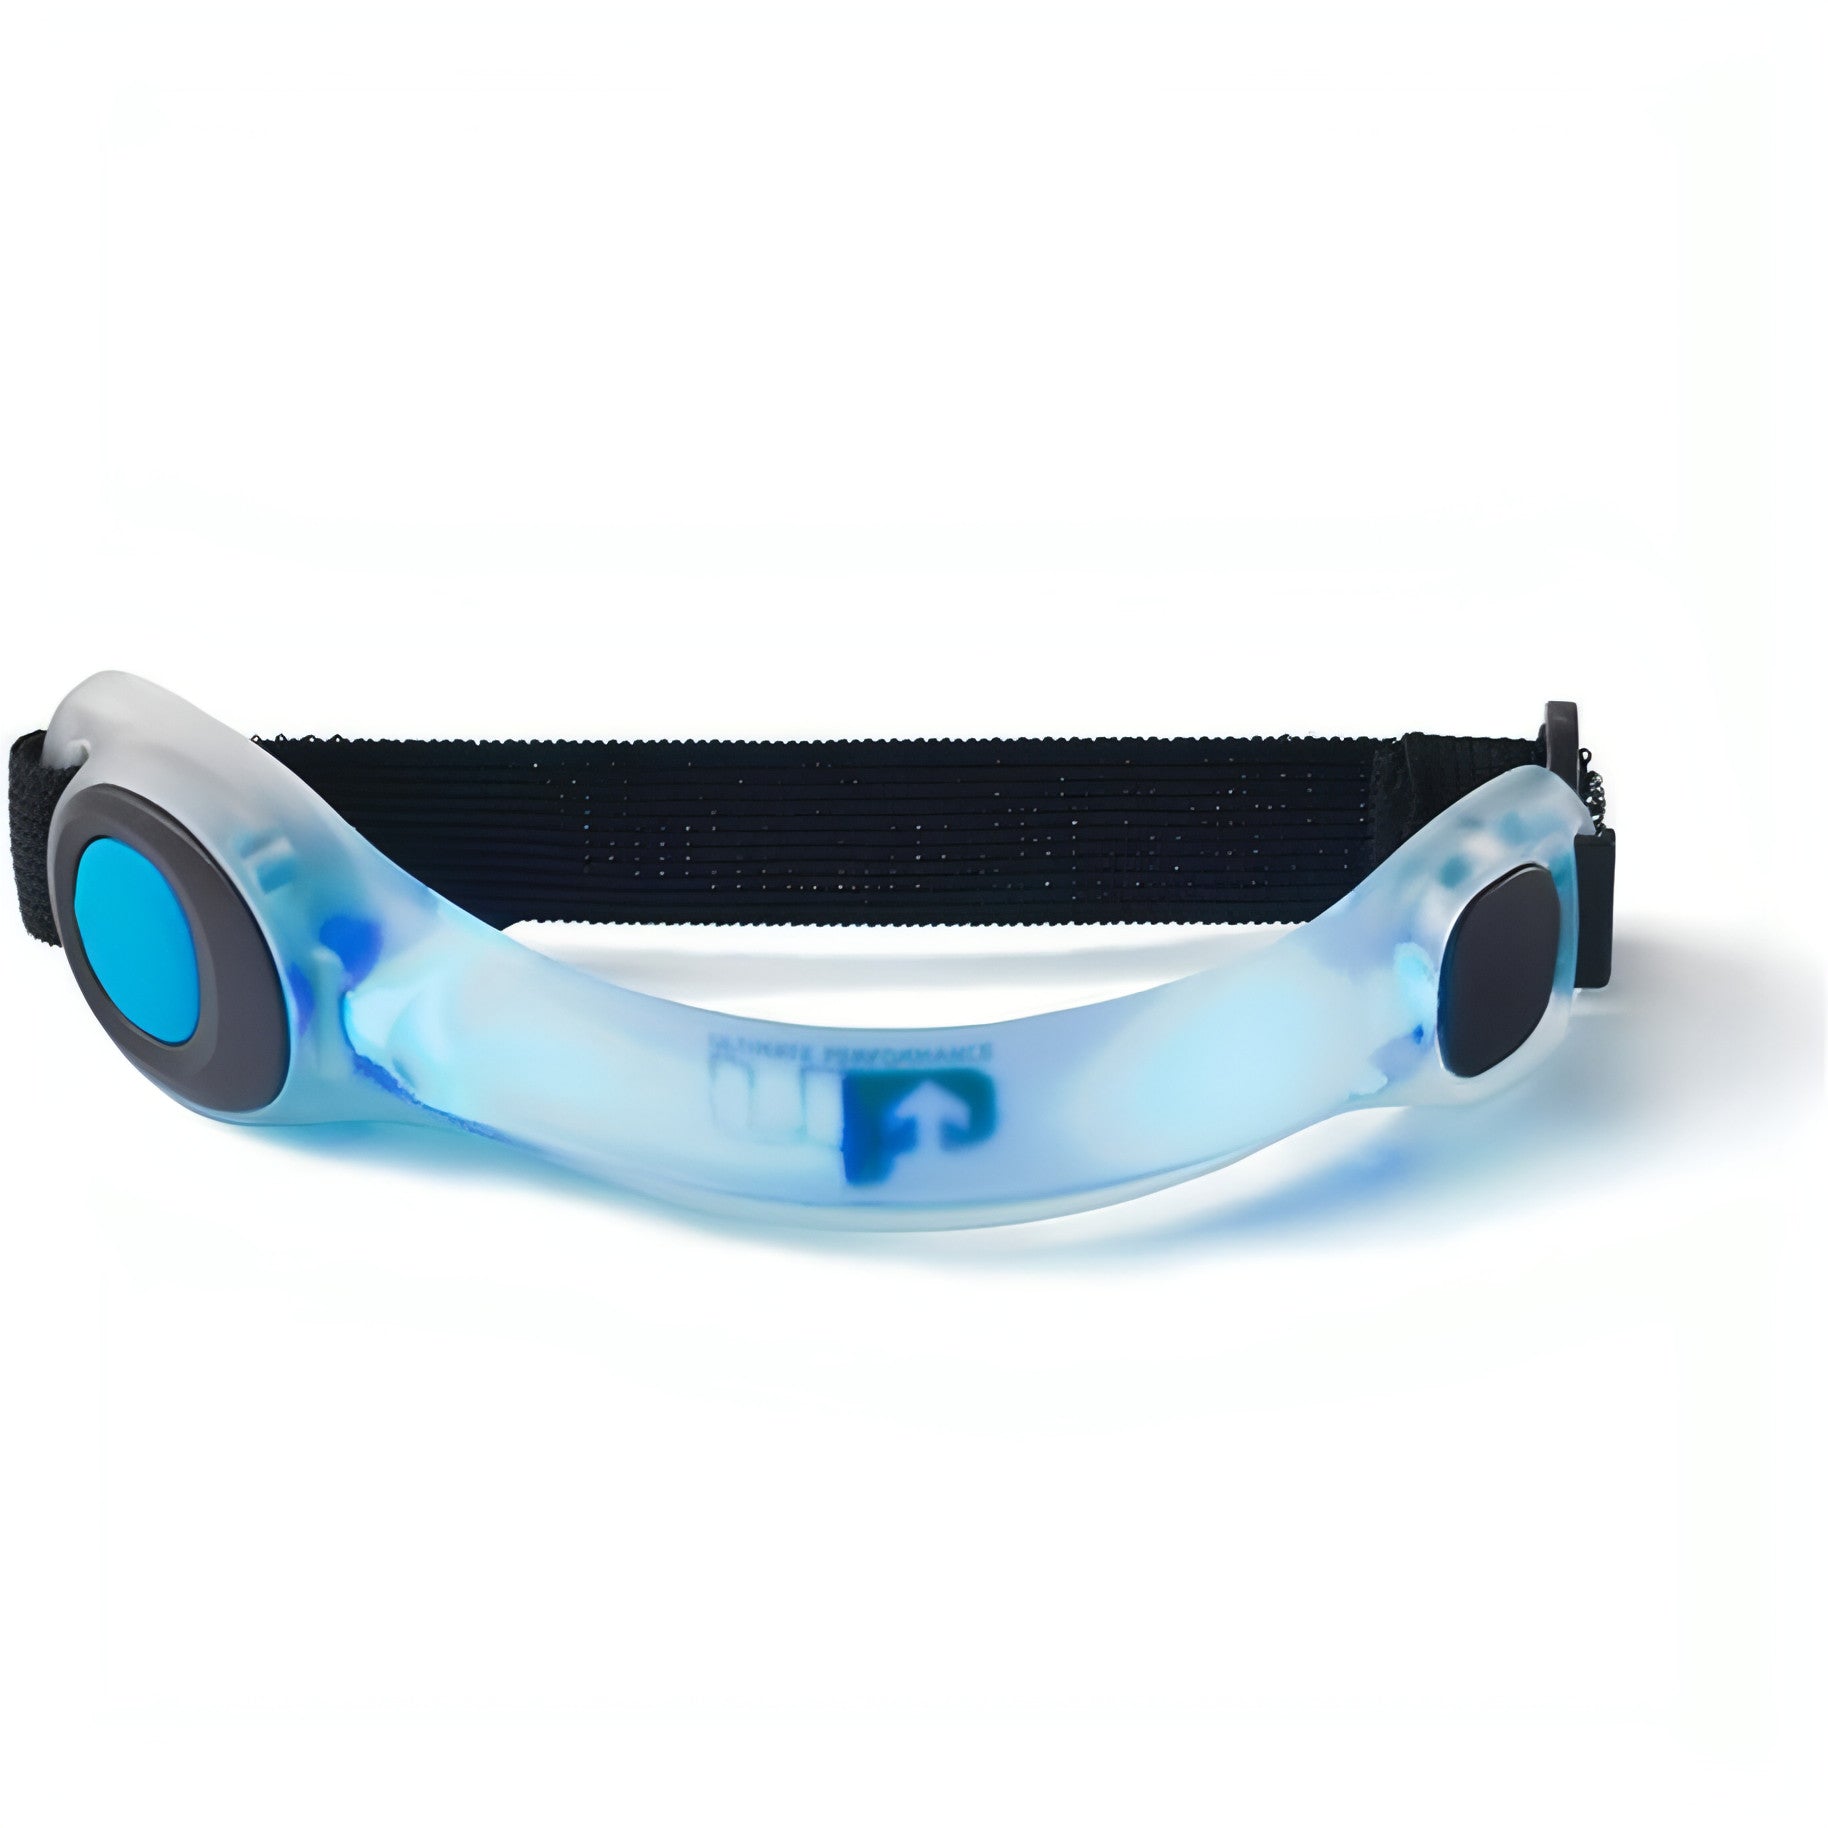 Ultimate Performance Flamborough LED Armband - Blue - Start Fitness